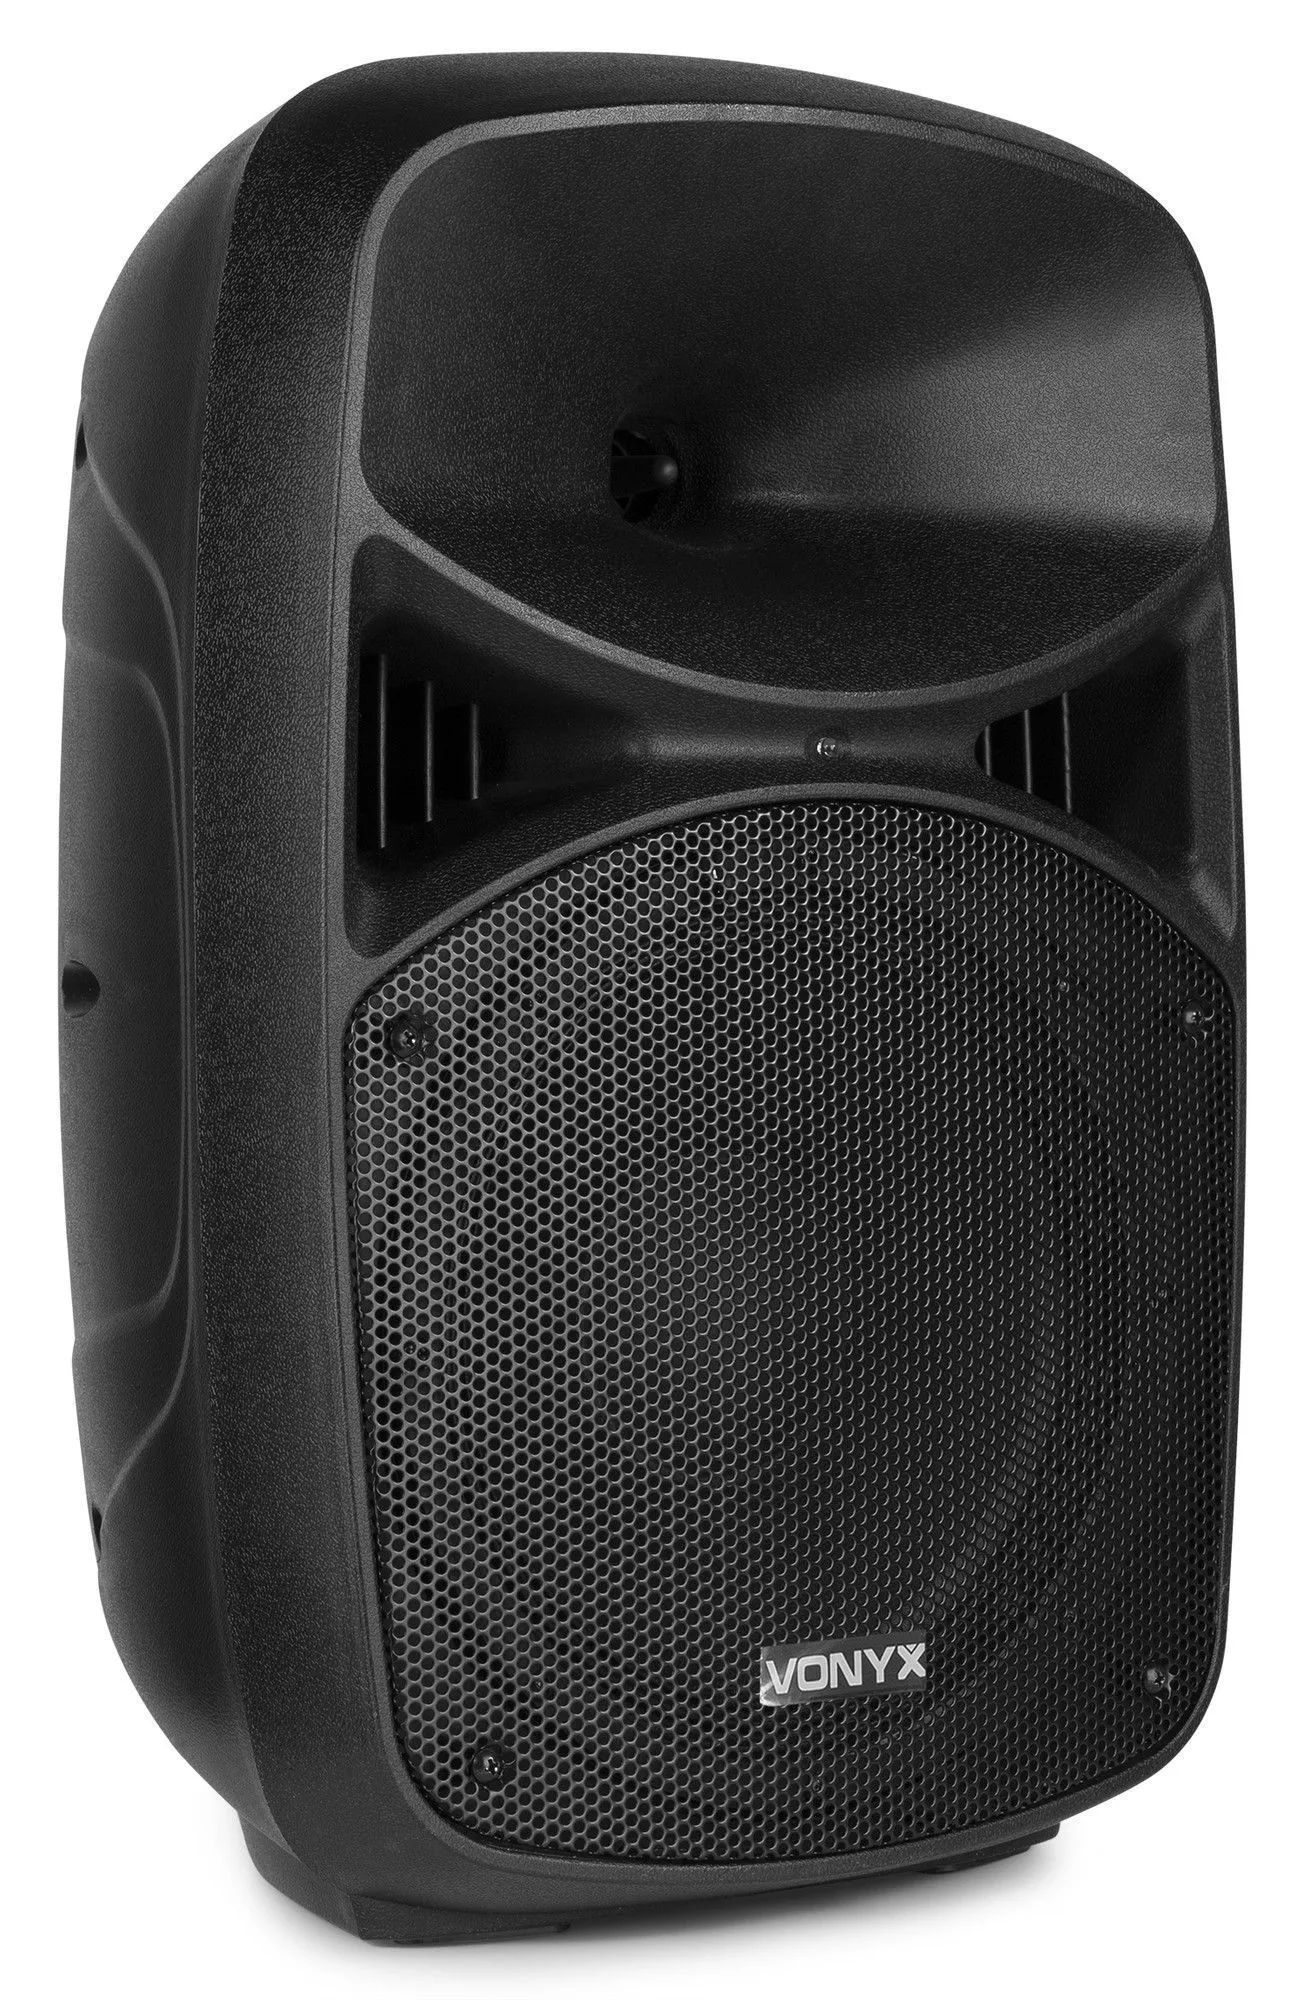 Vonyx retourdeals complete geluidsinstallaties|complete geluidsinstallaties|speakersets